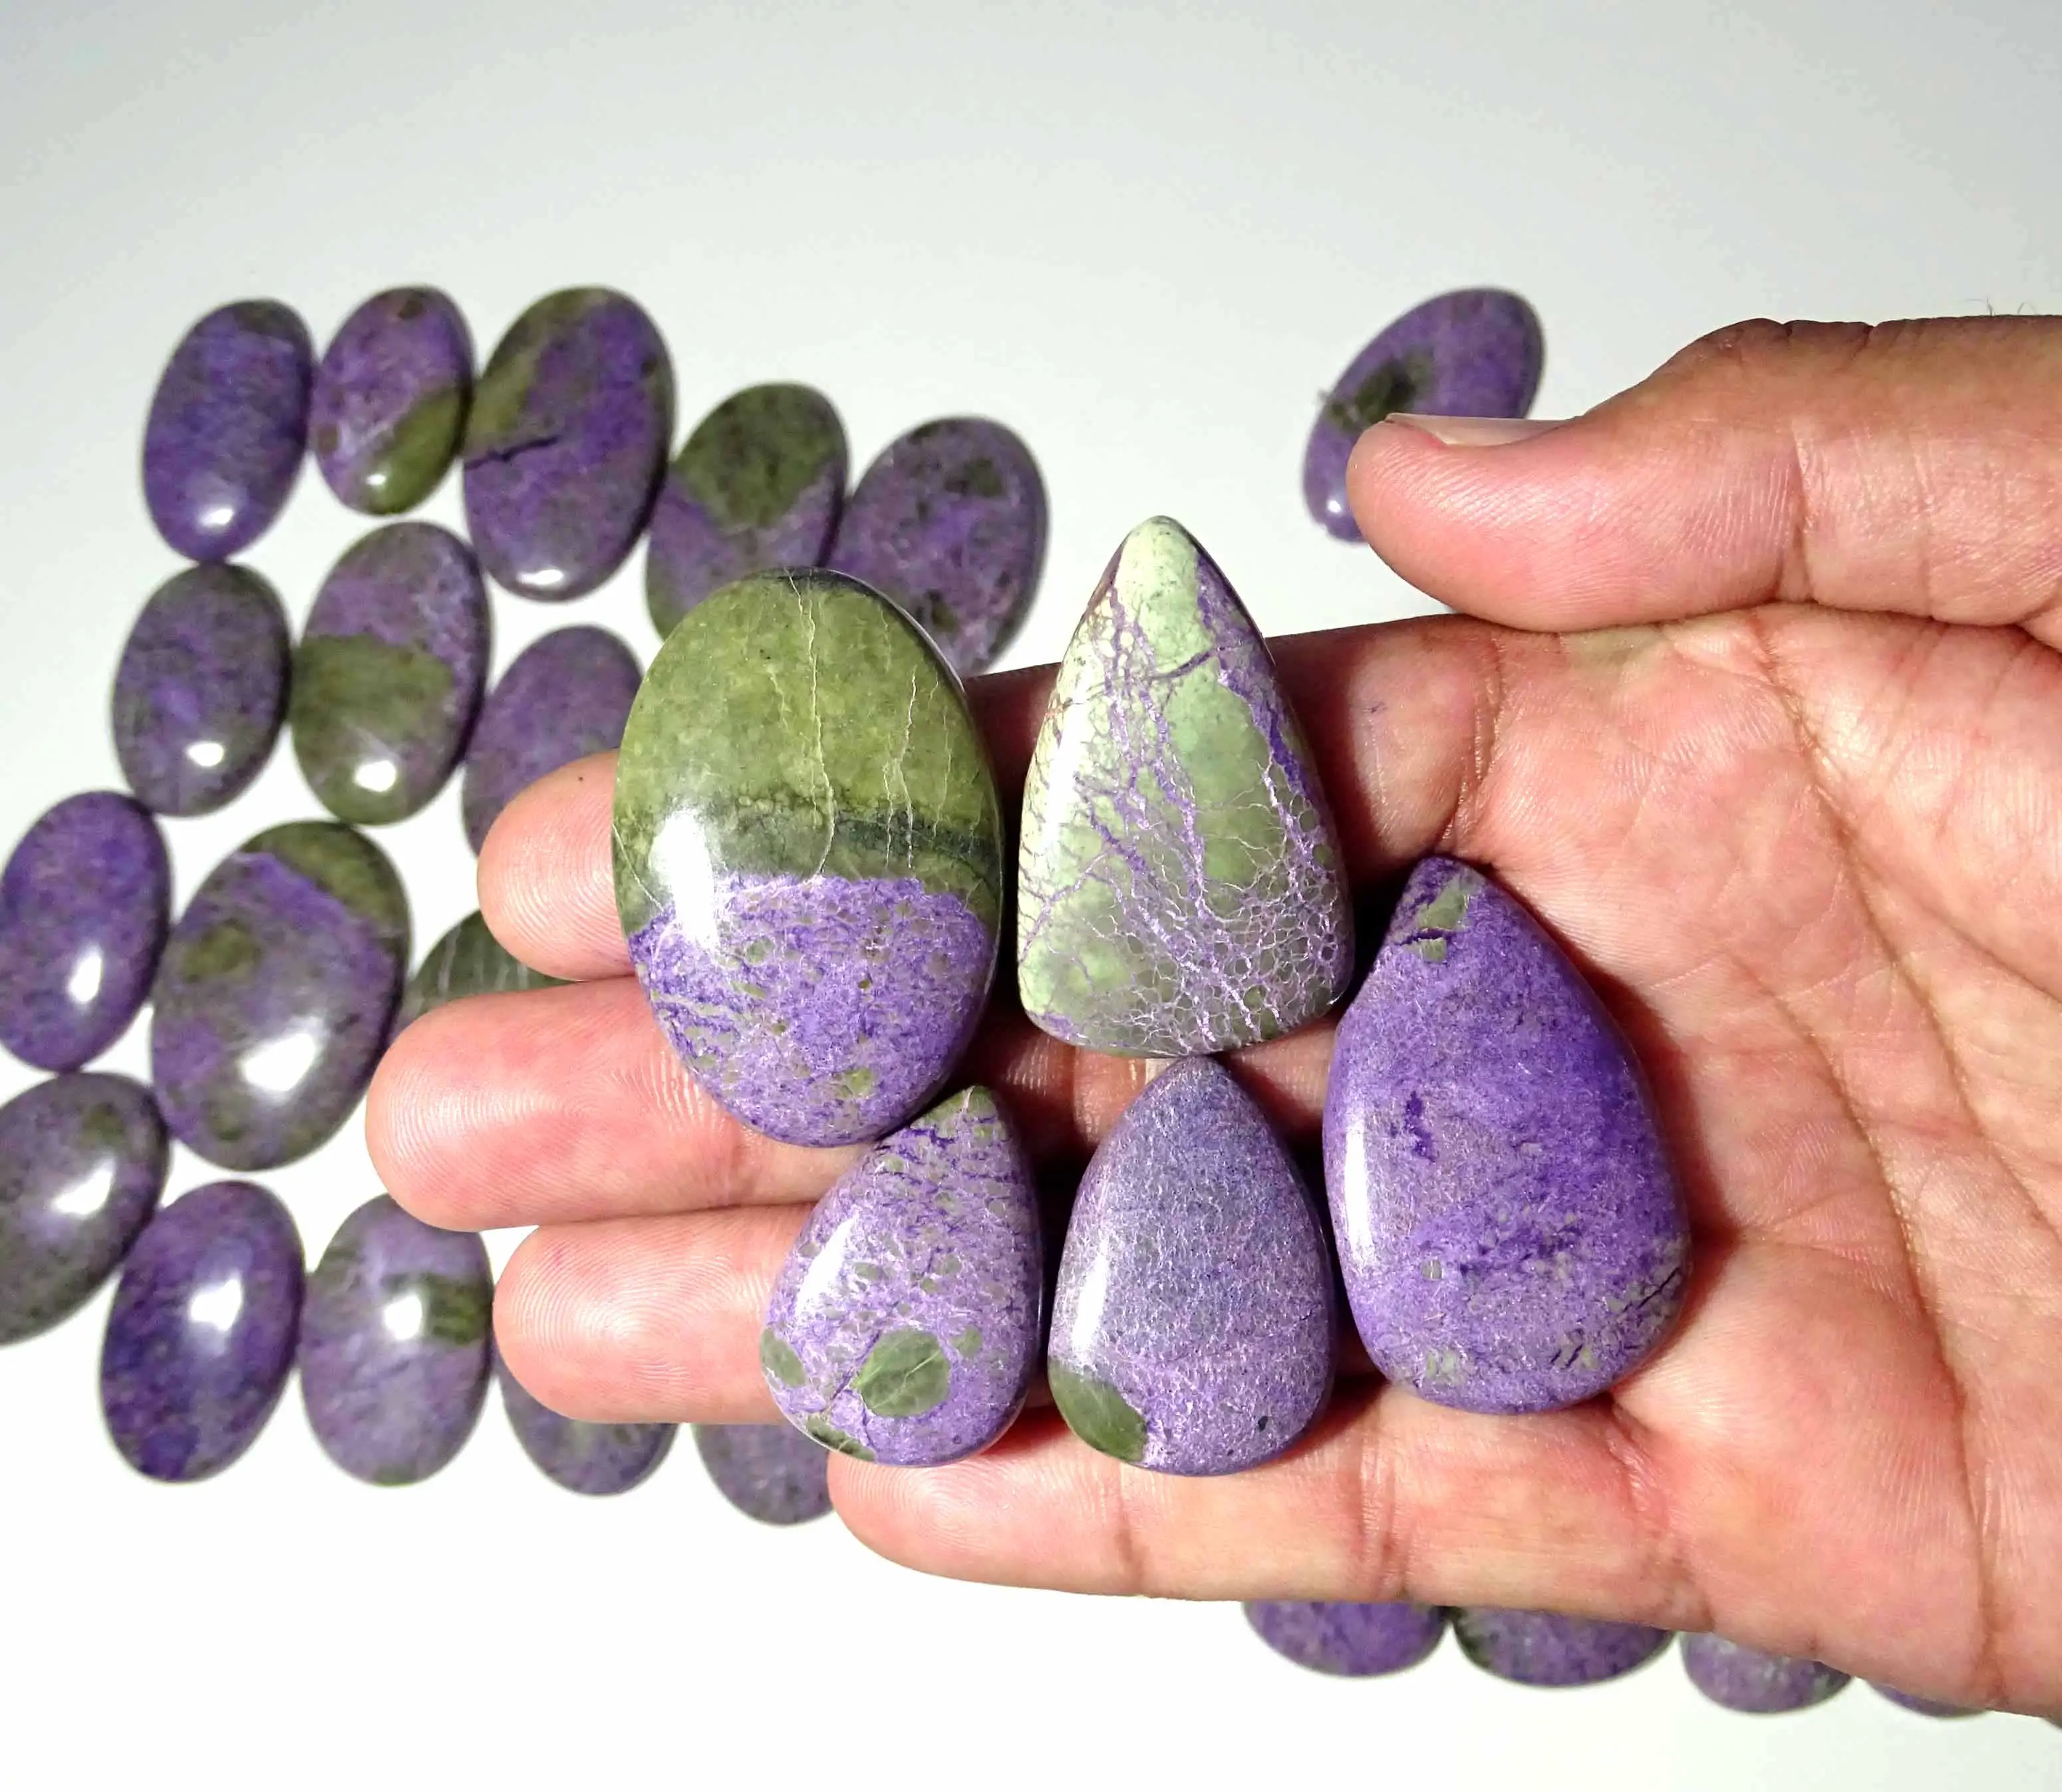 La migliore vendita Purpurite Cabochon sfuso formato formato Purpurite pietra preziosa lotto di alta qualità fatta a mano Purpurite pietra per la vendita pronta